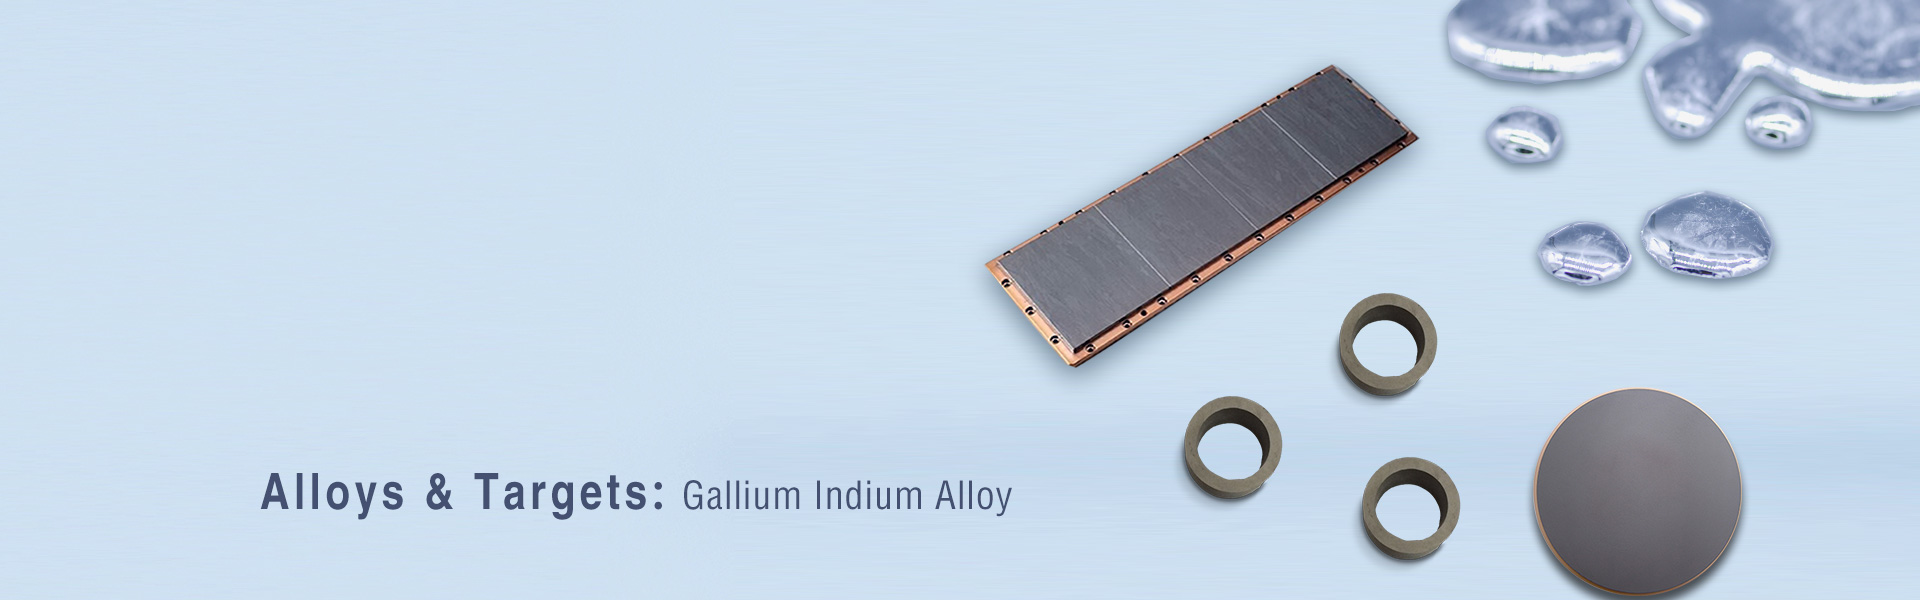 Gallium Indium Alloy